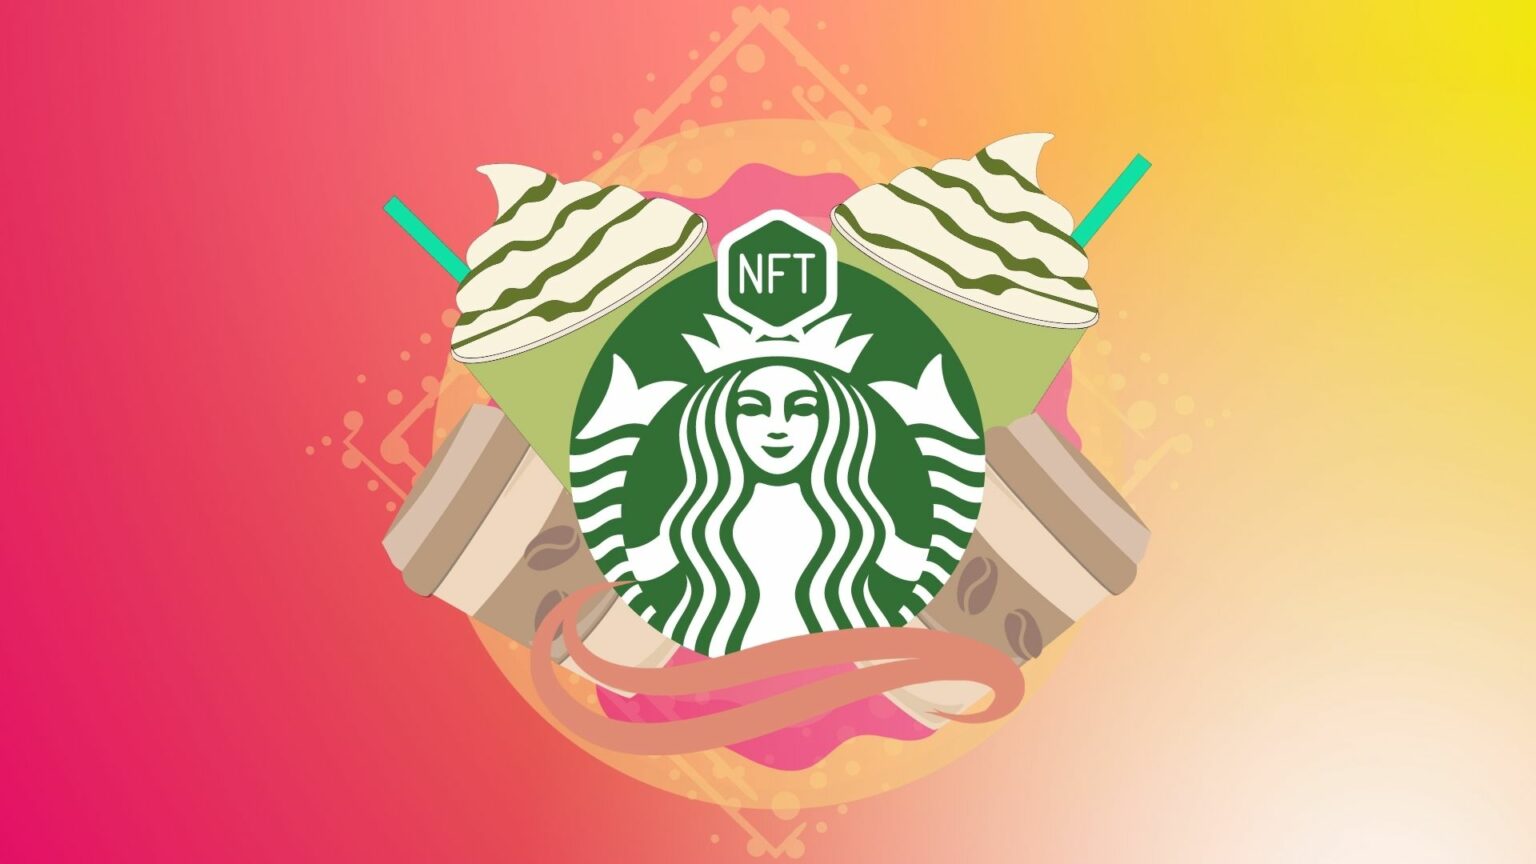 Starbucks випустить власну колекцію NFT до кінця цього року